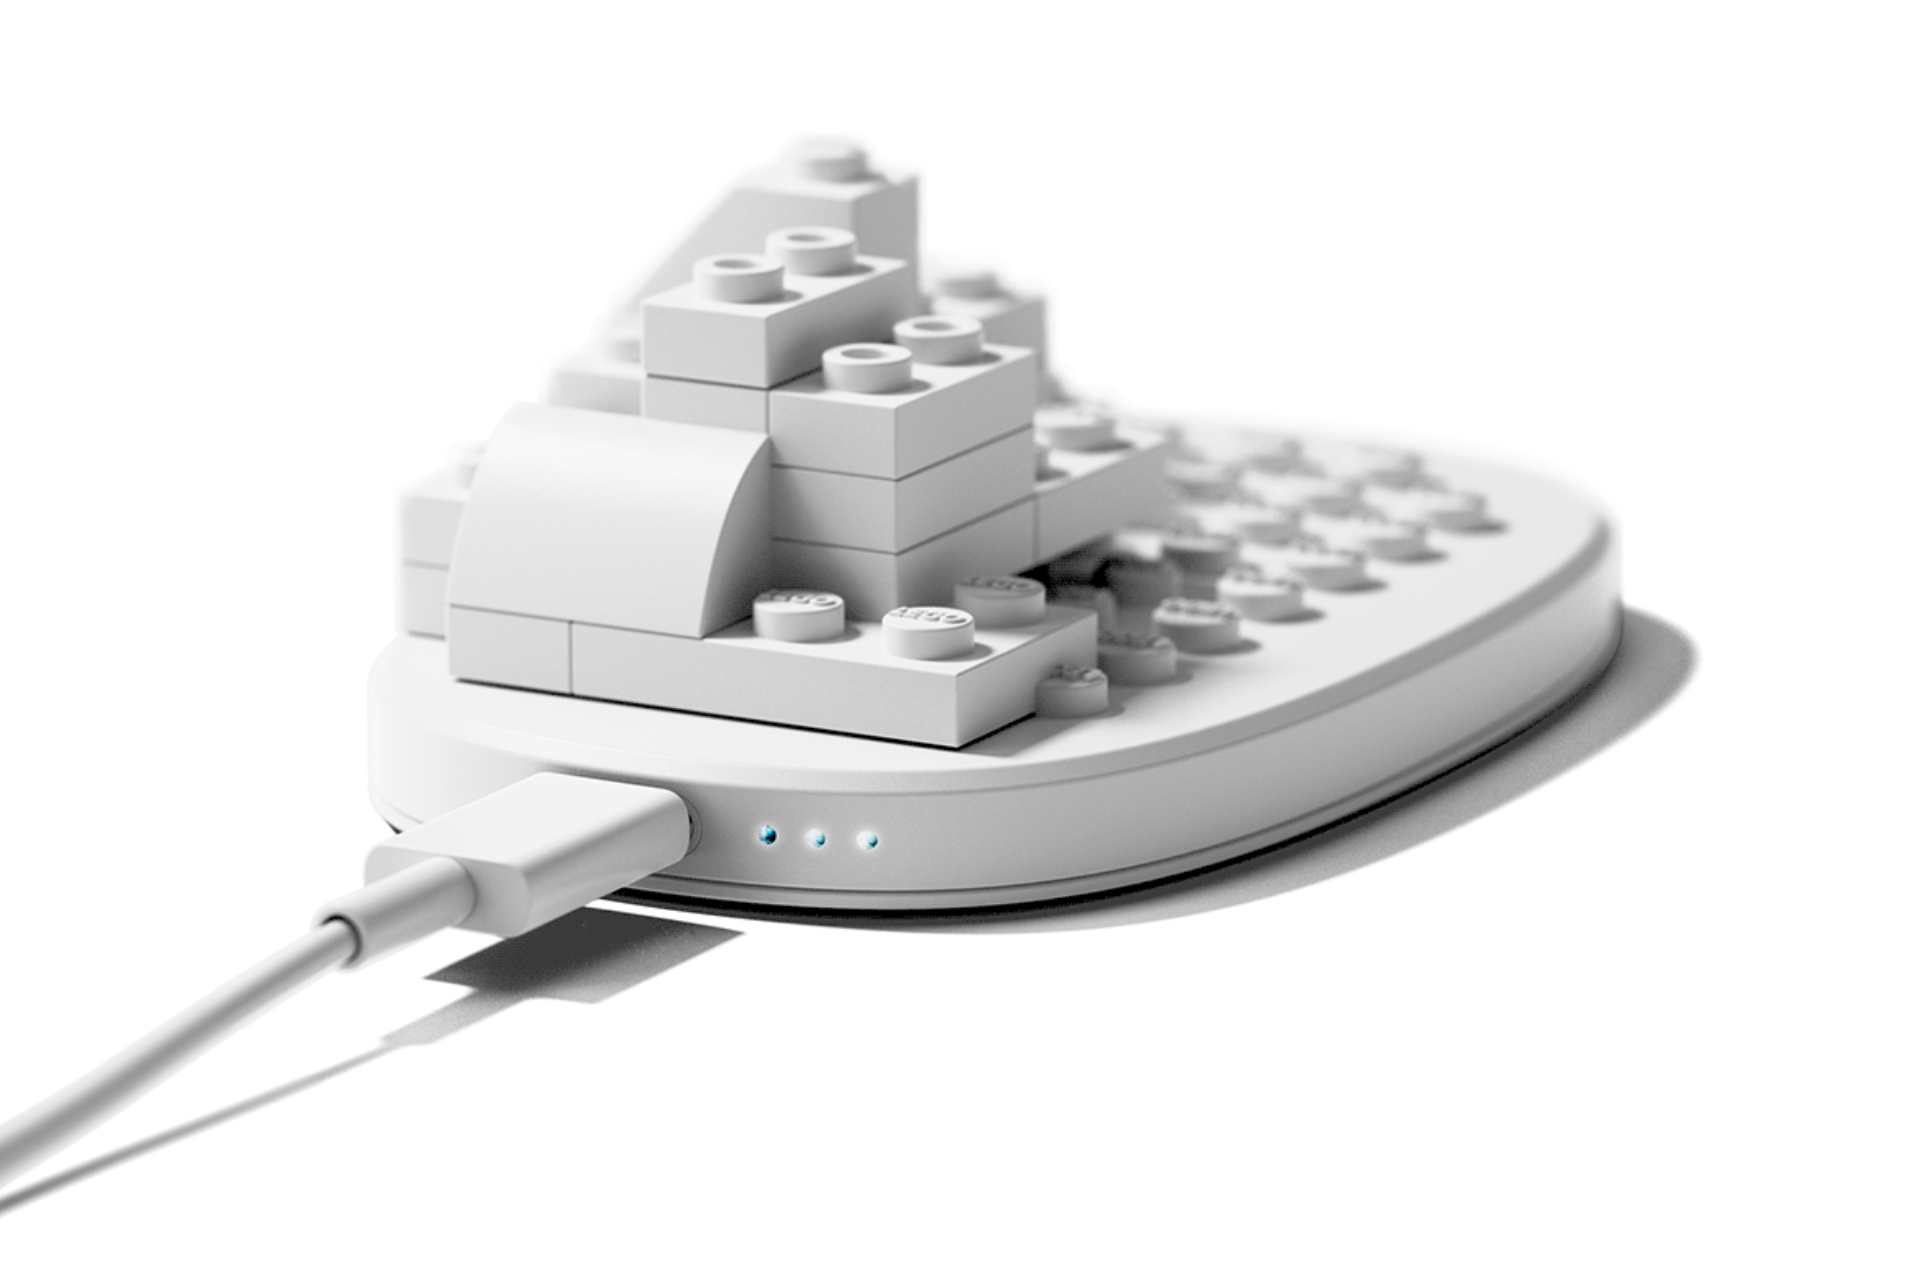 clickbrick: El Mouse conceptual Inspirado en LEGO